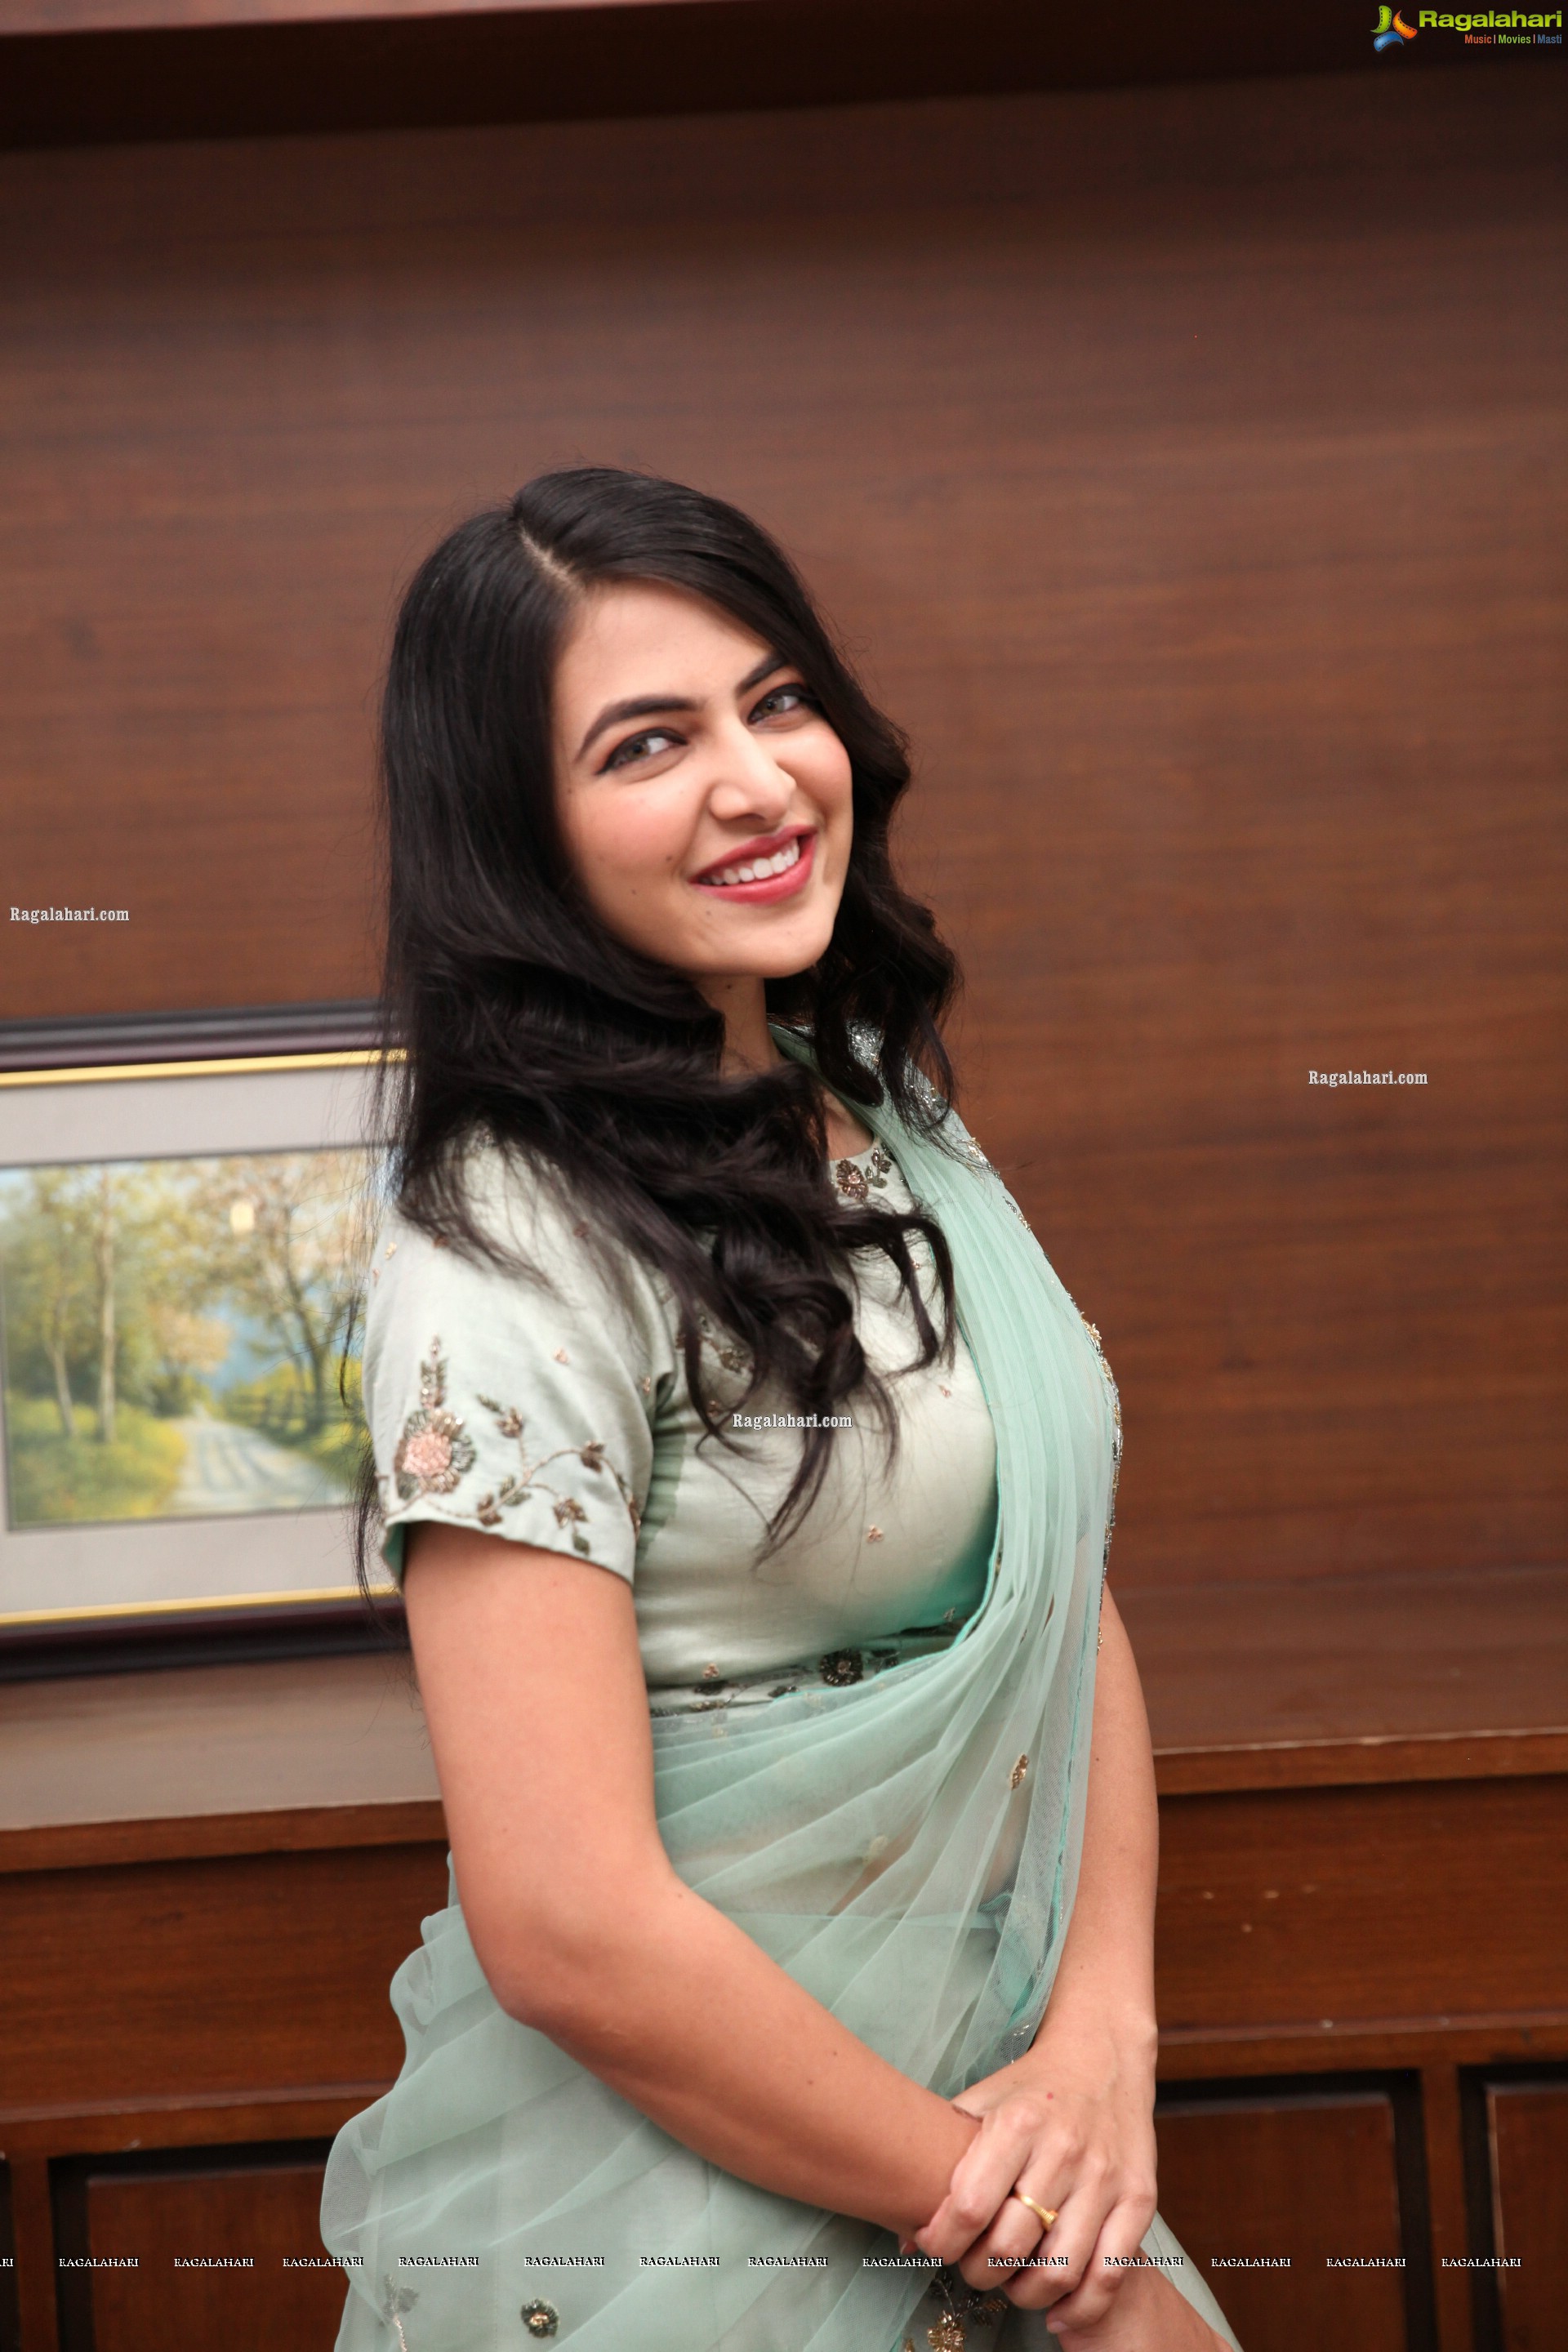 Supraja Reddy in Green Designer Lehenga Choli, HD Photo Gallery